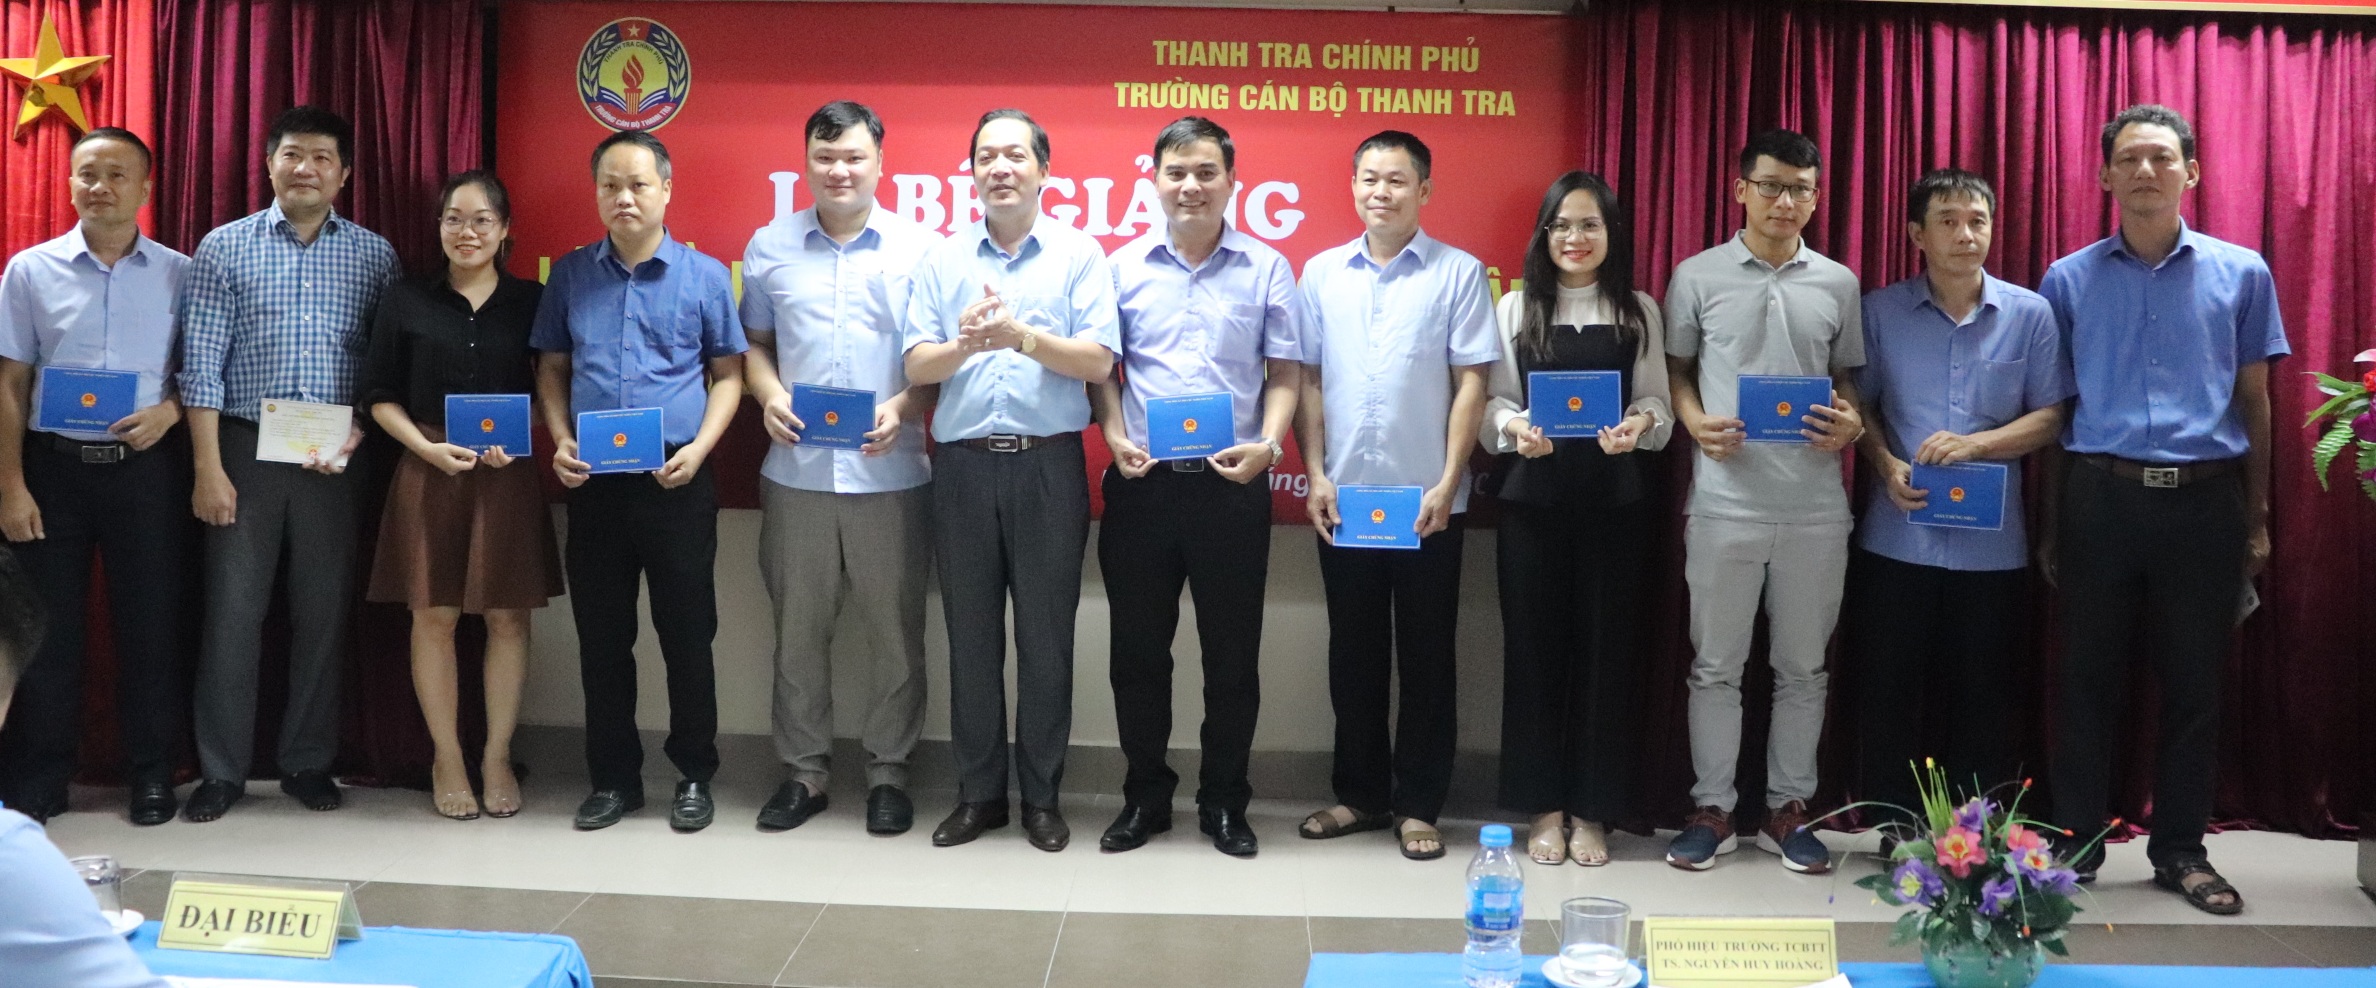 TS Nguyễn Huy Hoàng TTVCC PHT nhà trường trao chứng nhận cho học viên